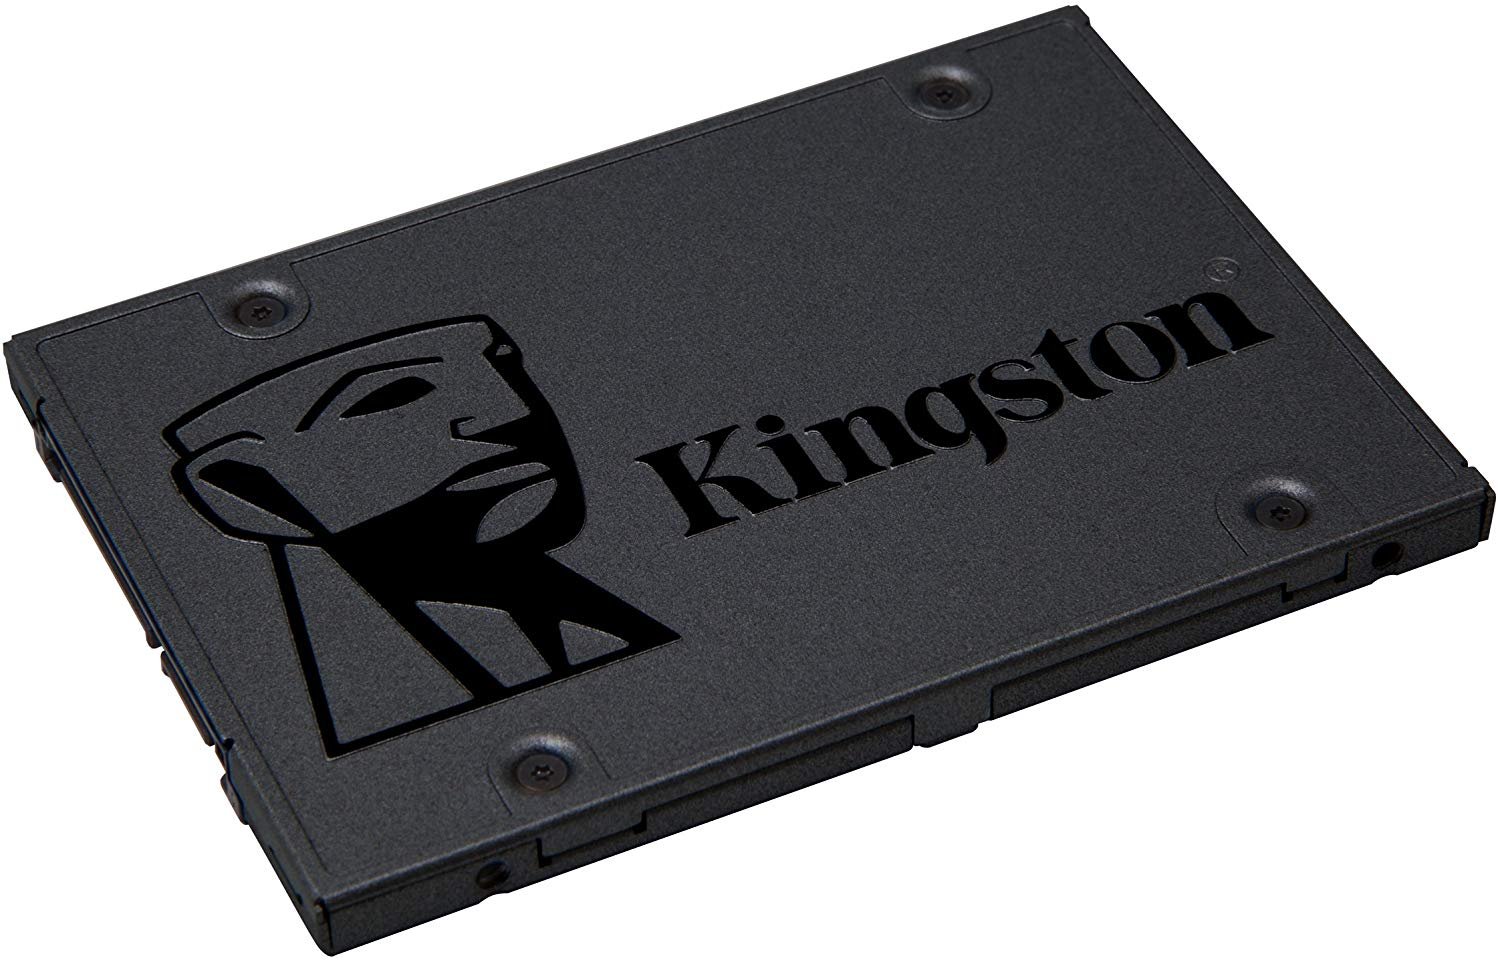 Qual SSD comprar: Kingston A400